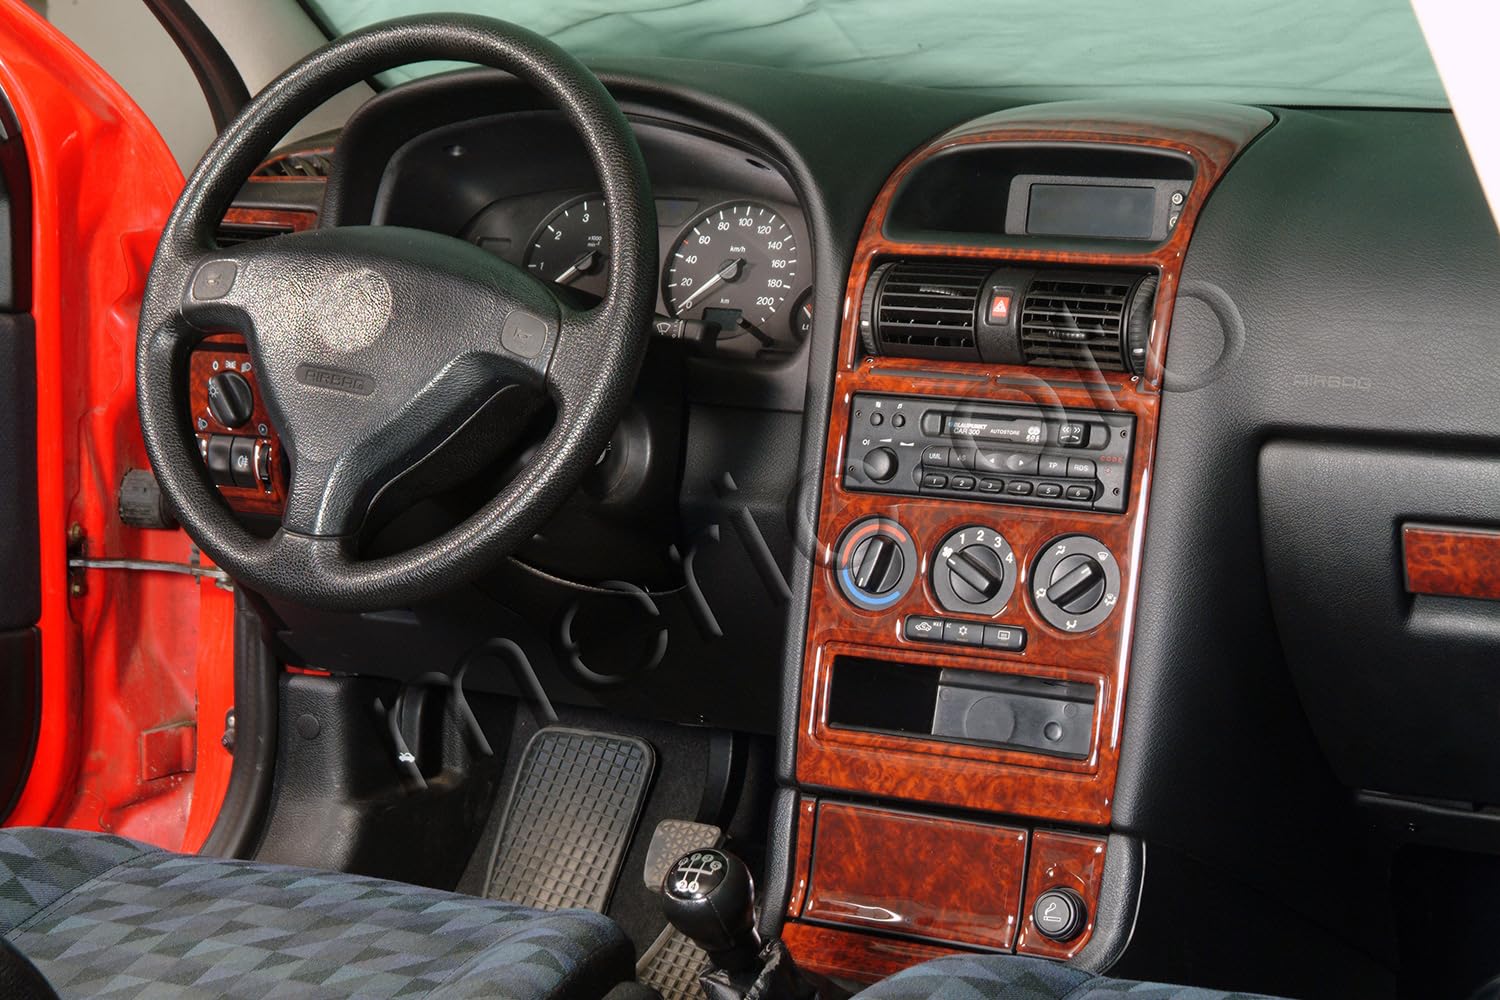 AUTOKLEIDUNG® Cockpit Dekor kompatibel mit Opel Astra G Baujahr 03/1998-12/2003 16 Teile | 3D Carbon Optik von Autokleidung